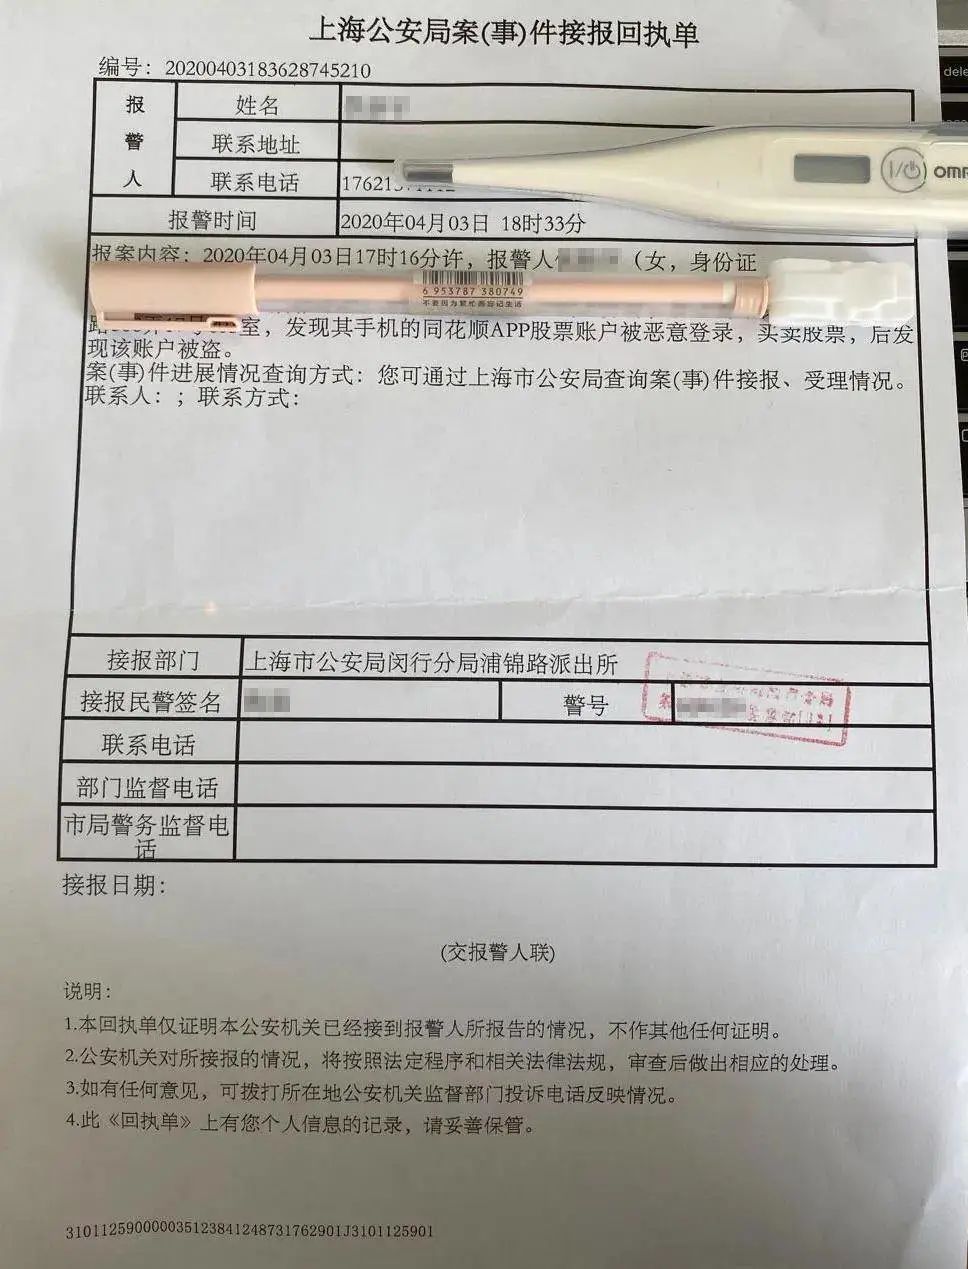 投资者向警方报案的回执单,图自上海证券报